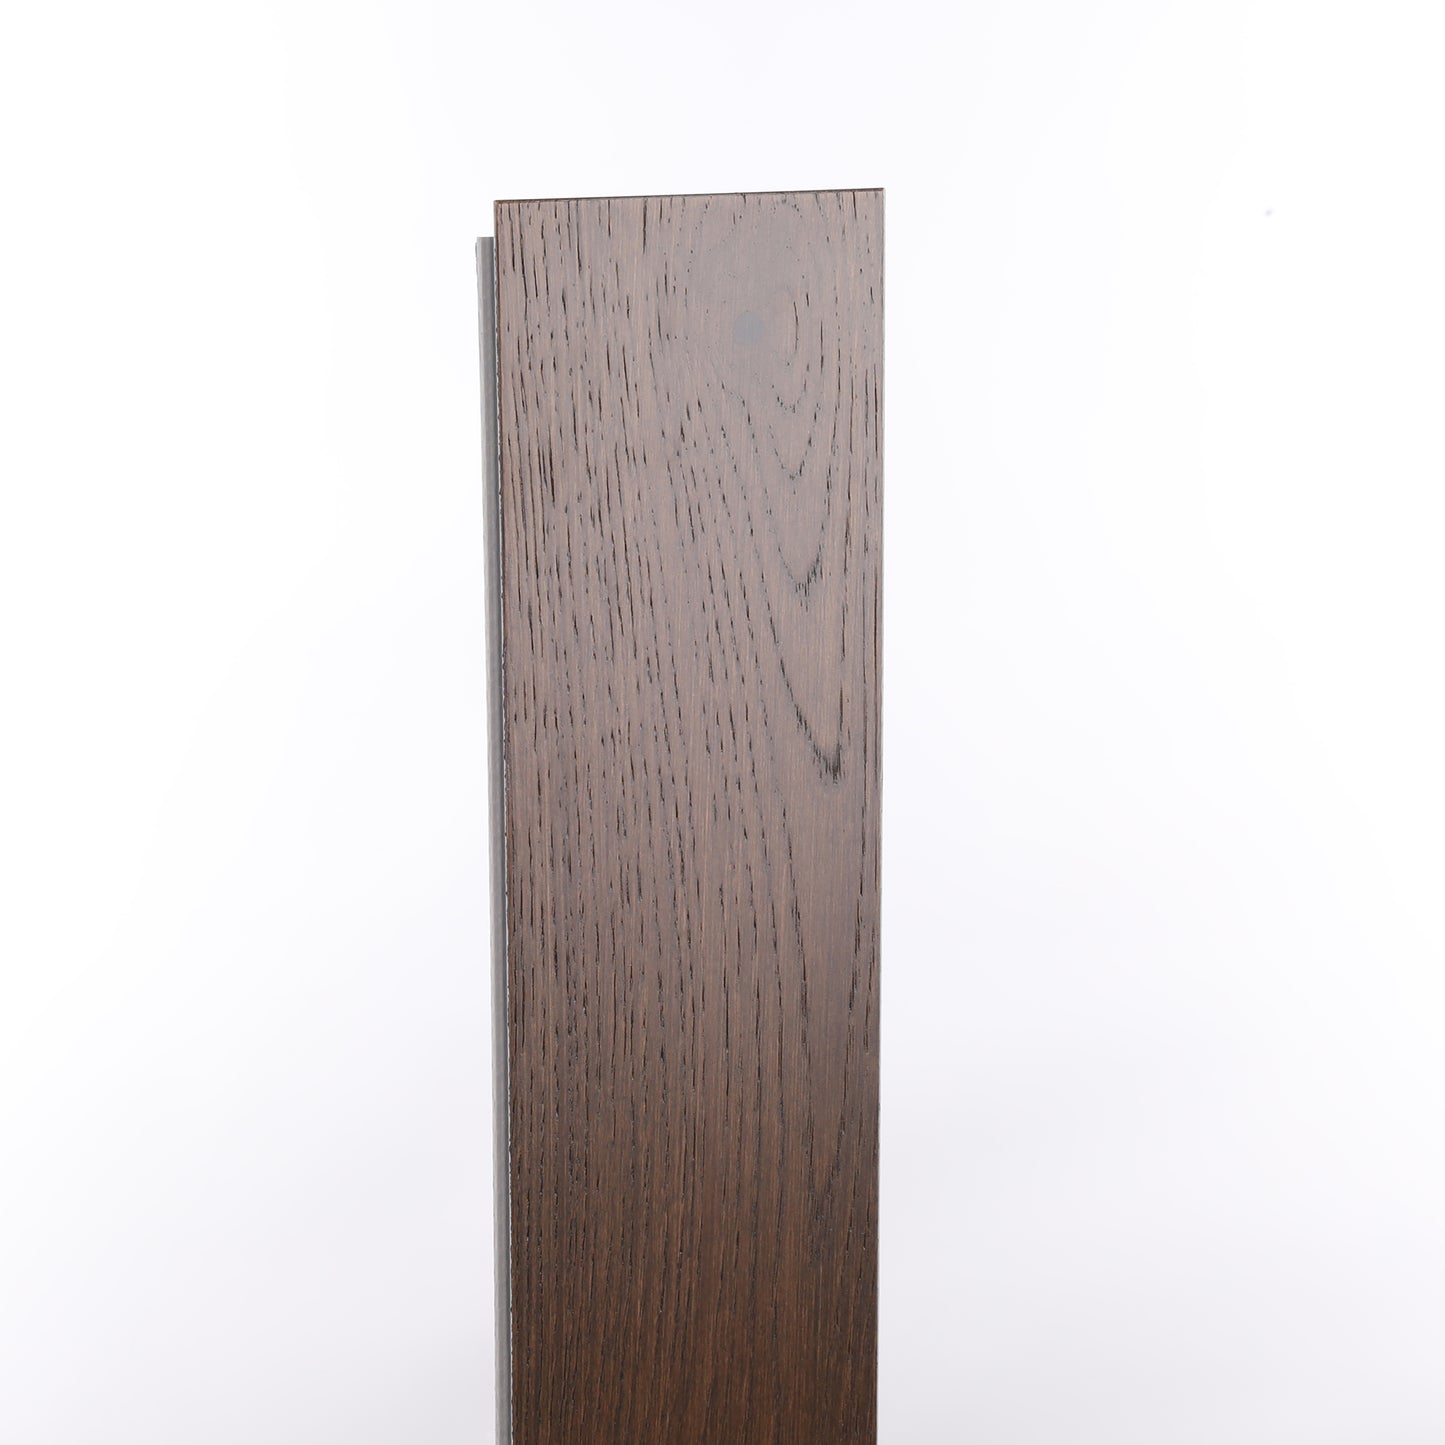 7mm Rustic Barn Waterproof Engineered Hardwood Flooring 5 in. Wide x Varying Length Long